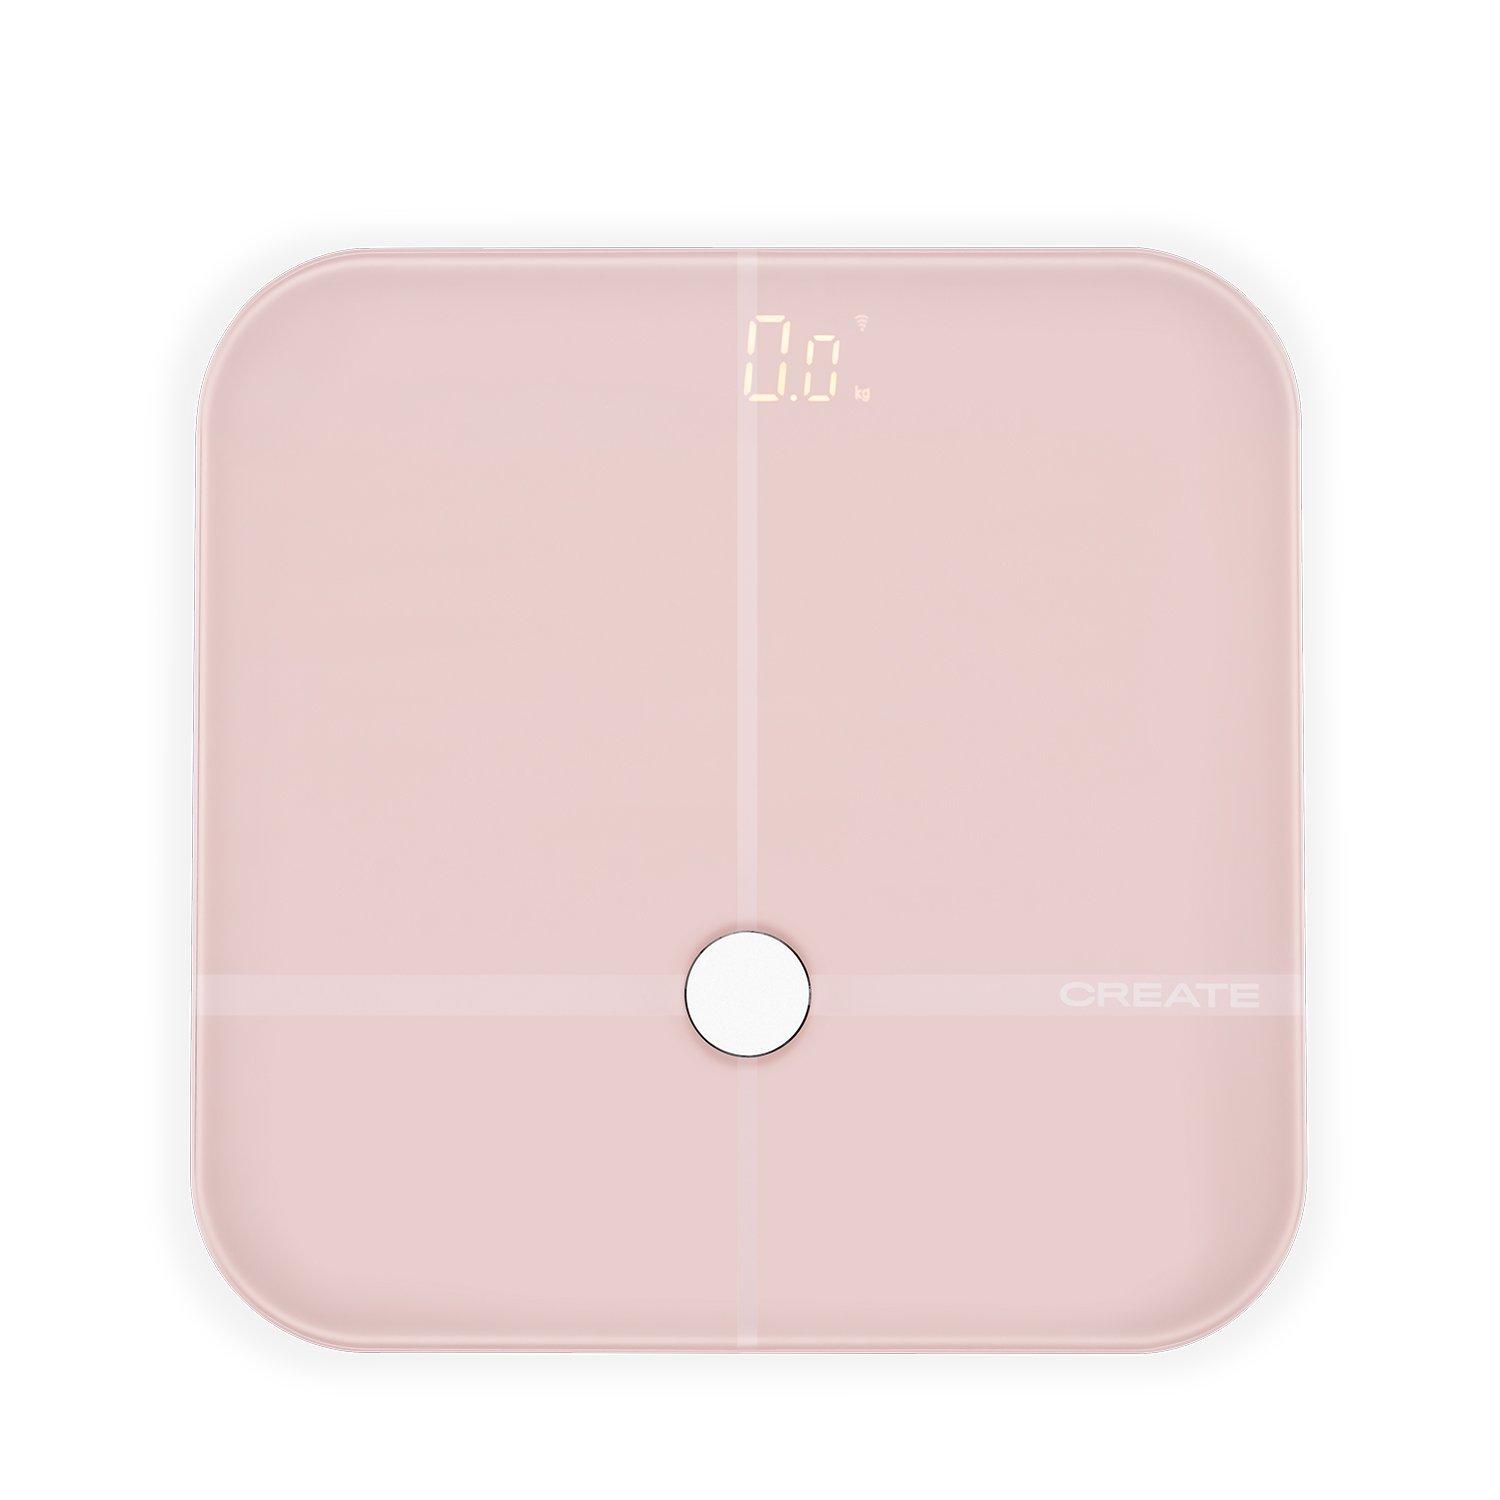 CREATE BALANCE BODY SMART PRO - Bilancia pesapersone intelligente con  bioimpedenza e Bluetooth, rosa pastello